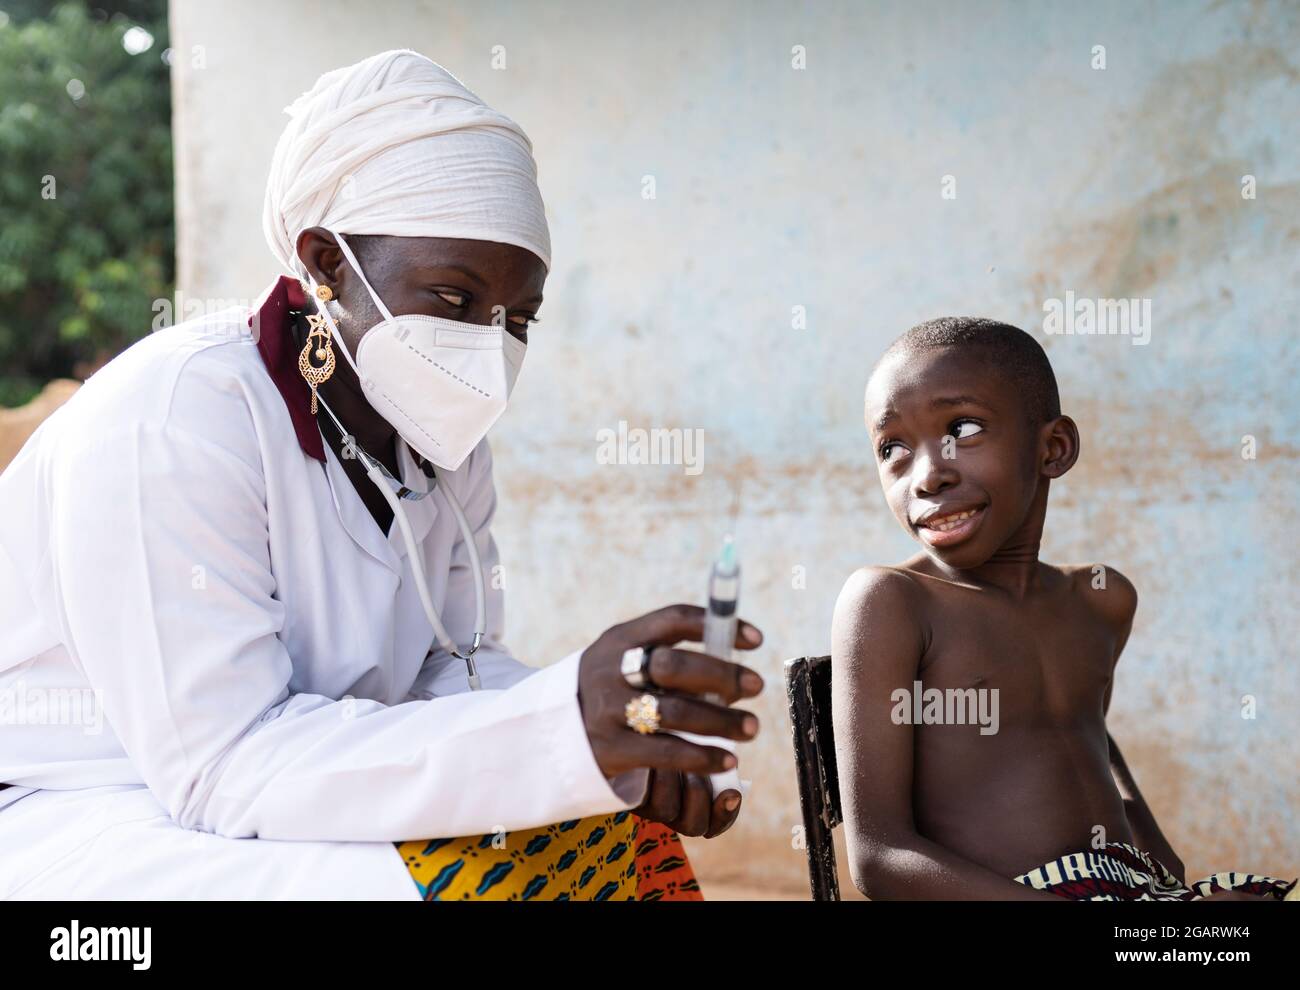 In questa immagine, un bambino africano carino sta scambiando le opinioni con il suo pediatra che sta per iniettare un vaccino nel suo braccio Foto Stock